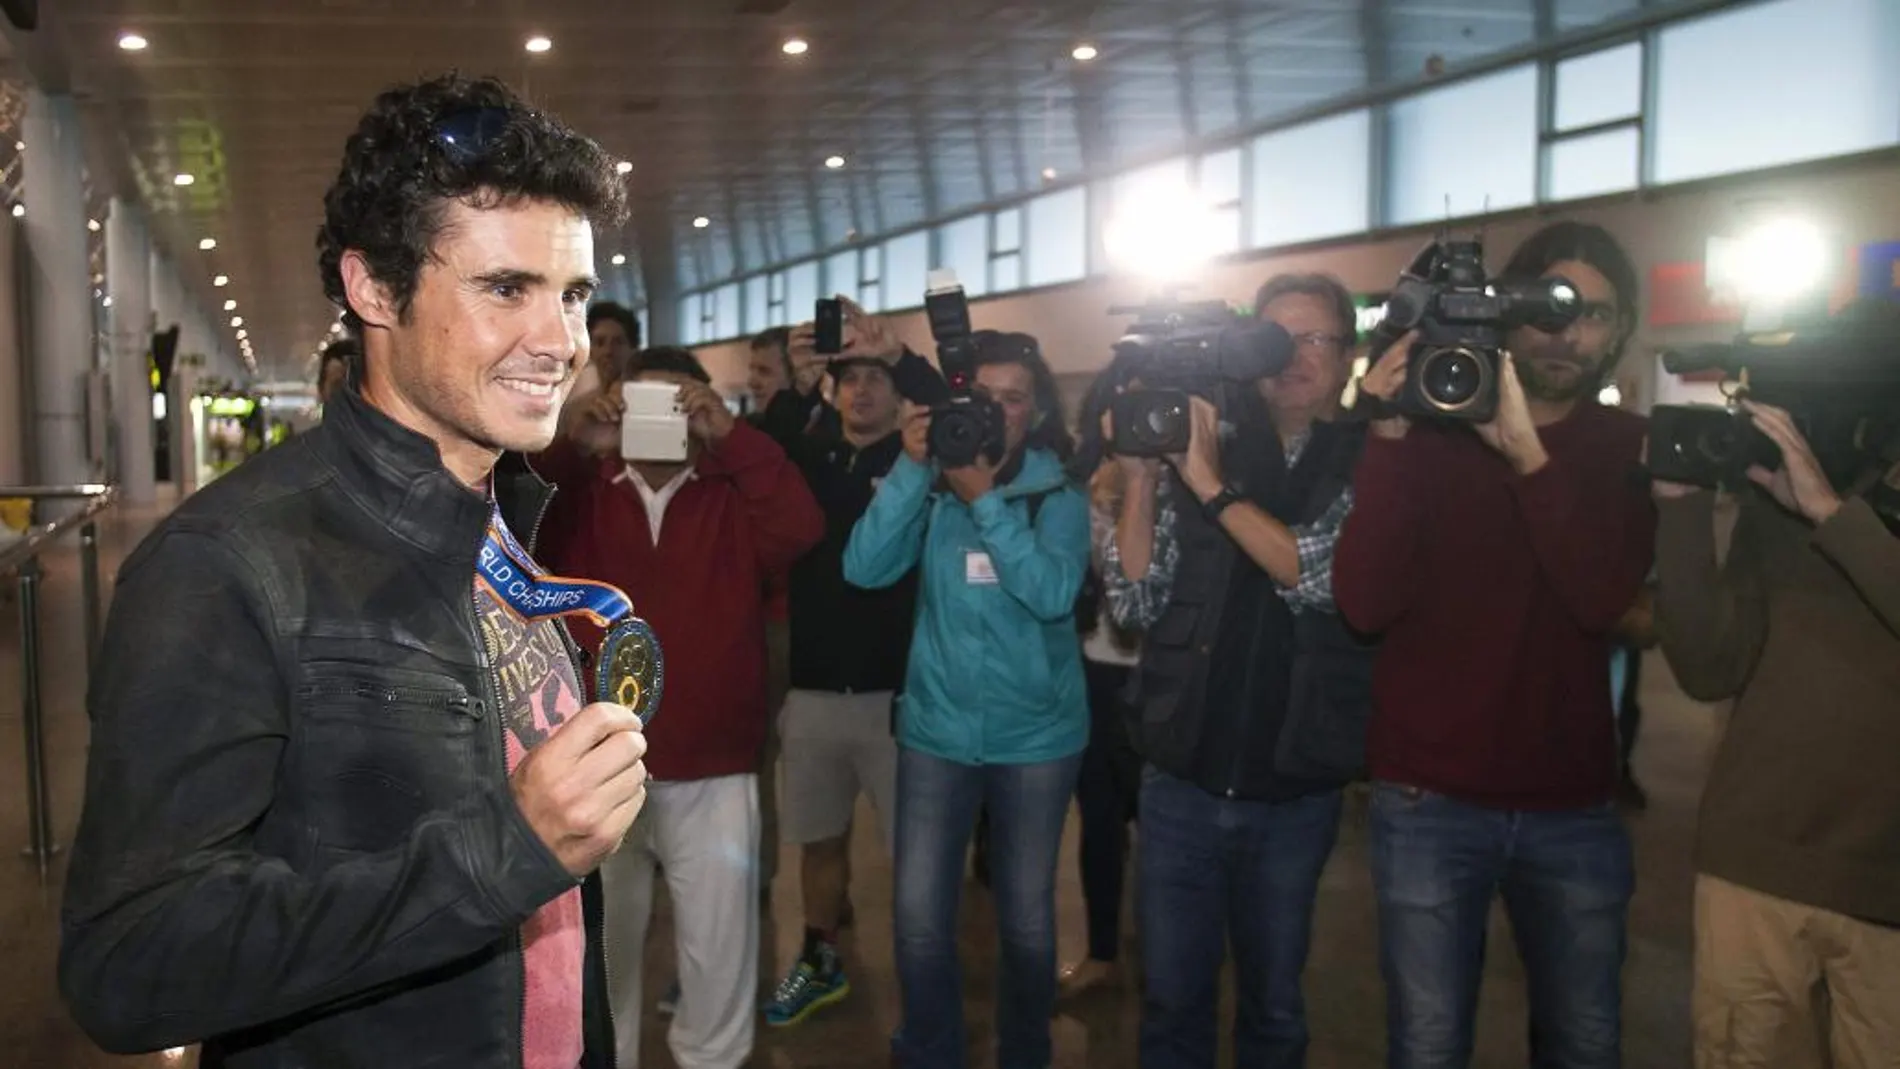 El triatleta Javier Gómez Noya, a su llegada al aeropuerto de Peinador, en Vigo, tras haberse proclamado campeón del mundo de triatlón por quinta vez